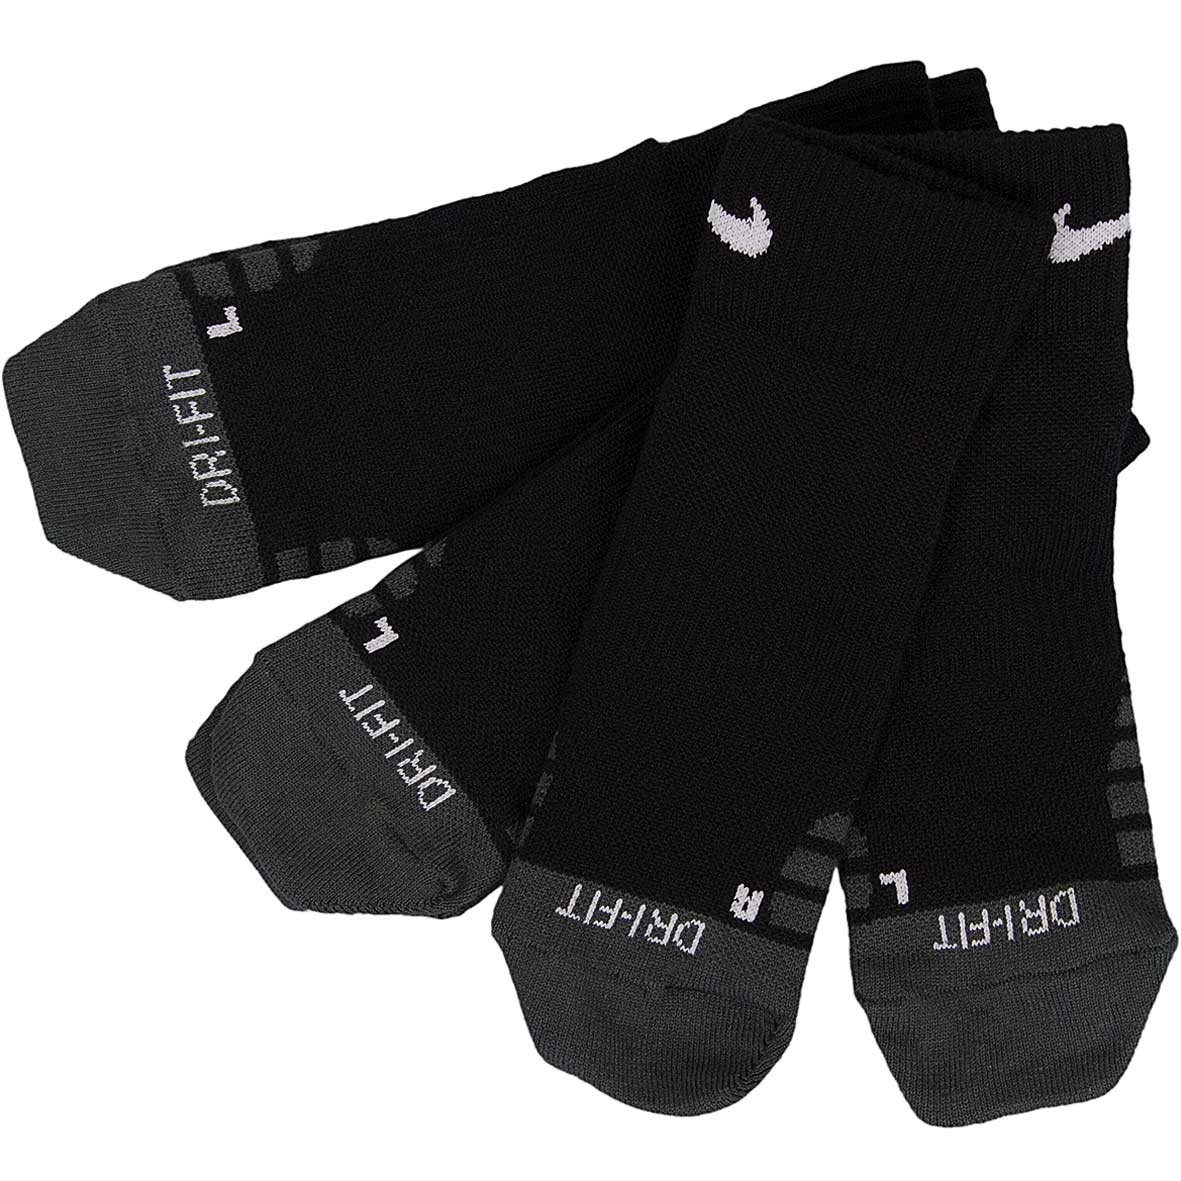 ☆ Nike Socken Dry Quarter Training 3er schwarz/weiß - hier bestellen!